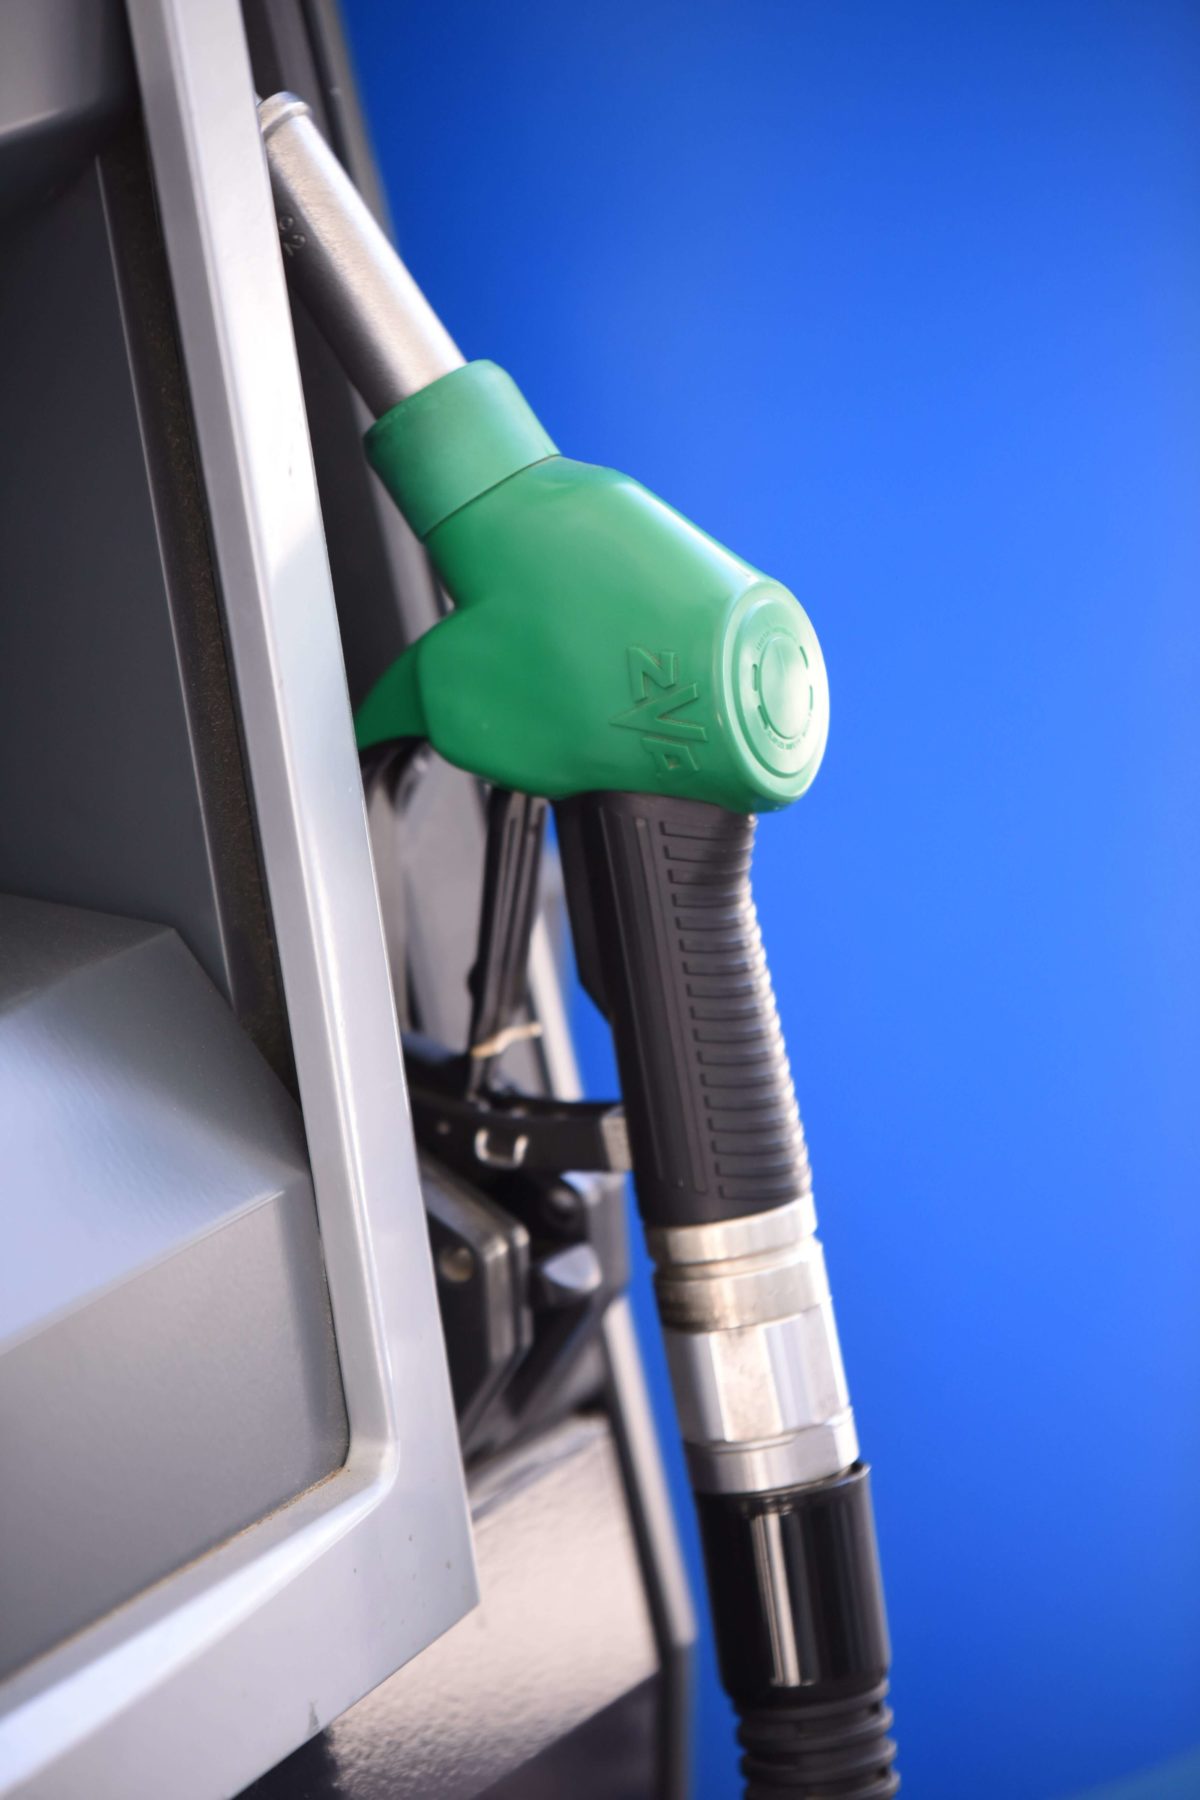 Πάρα πολλοί και ίσως μη ανιχνεύσιμοι οι διαλύτες, λένε οι βενζινοπώλες για τη νοθεία καυσίμων – Τι ζημιές προκαλούν, τι μπορούμε να κάνουμε